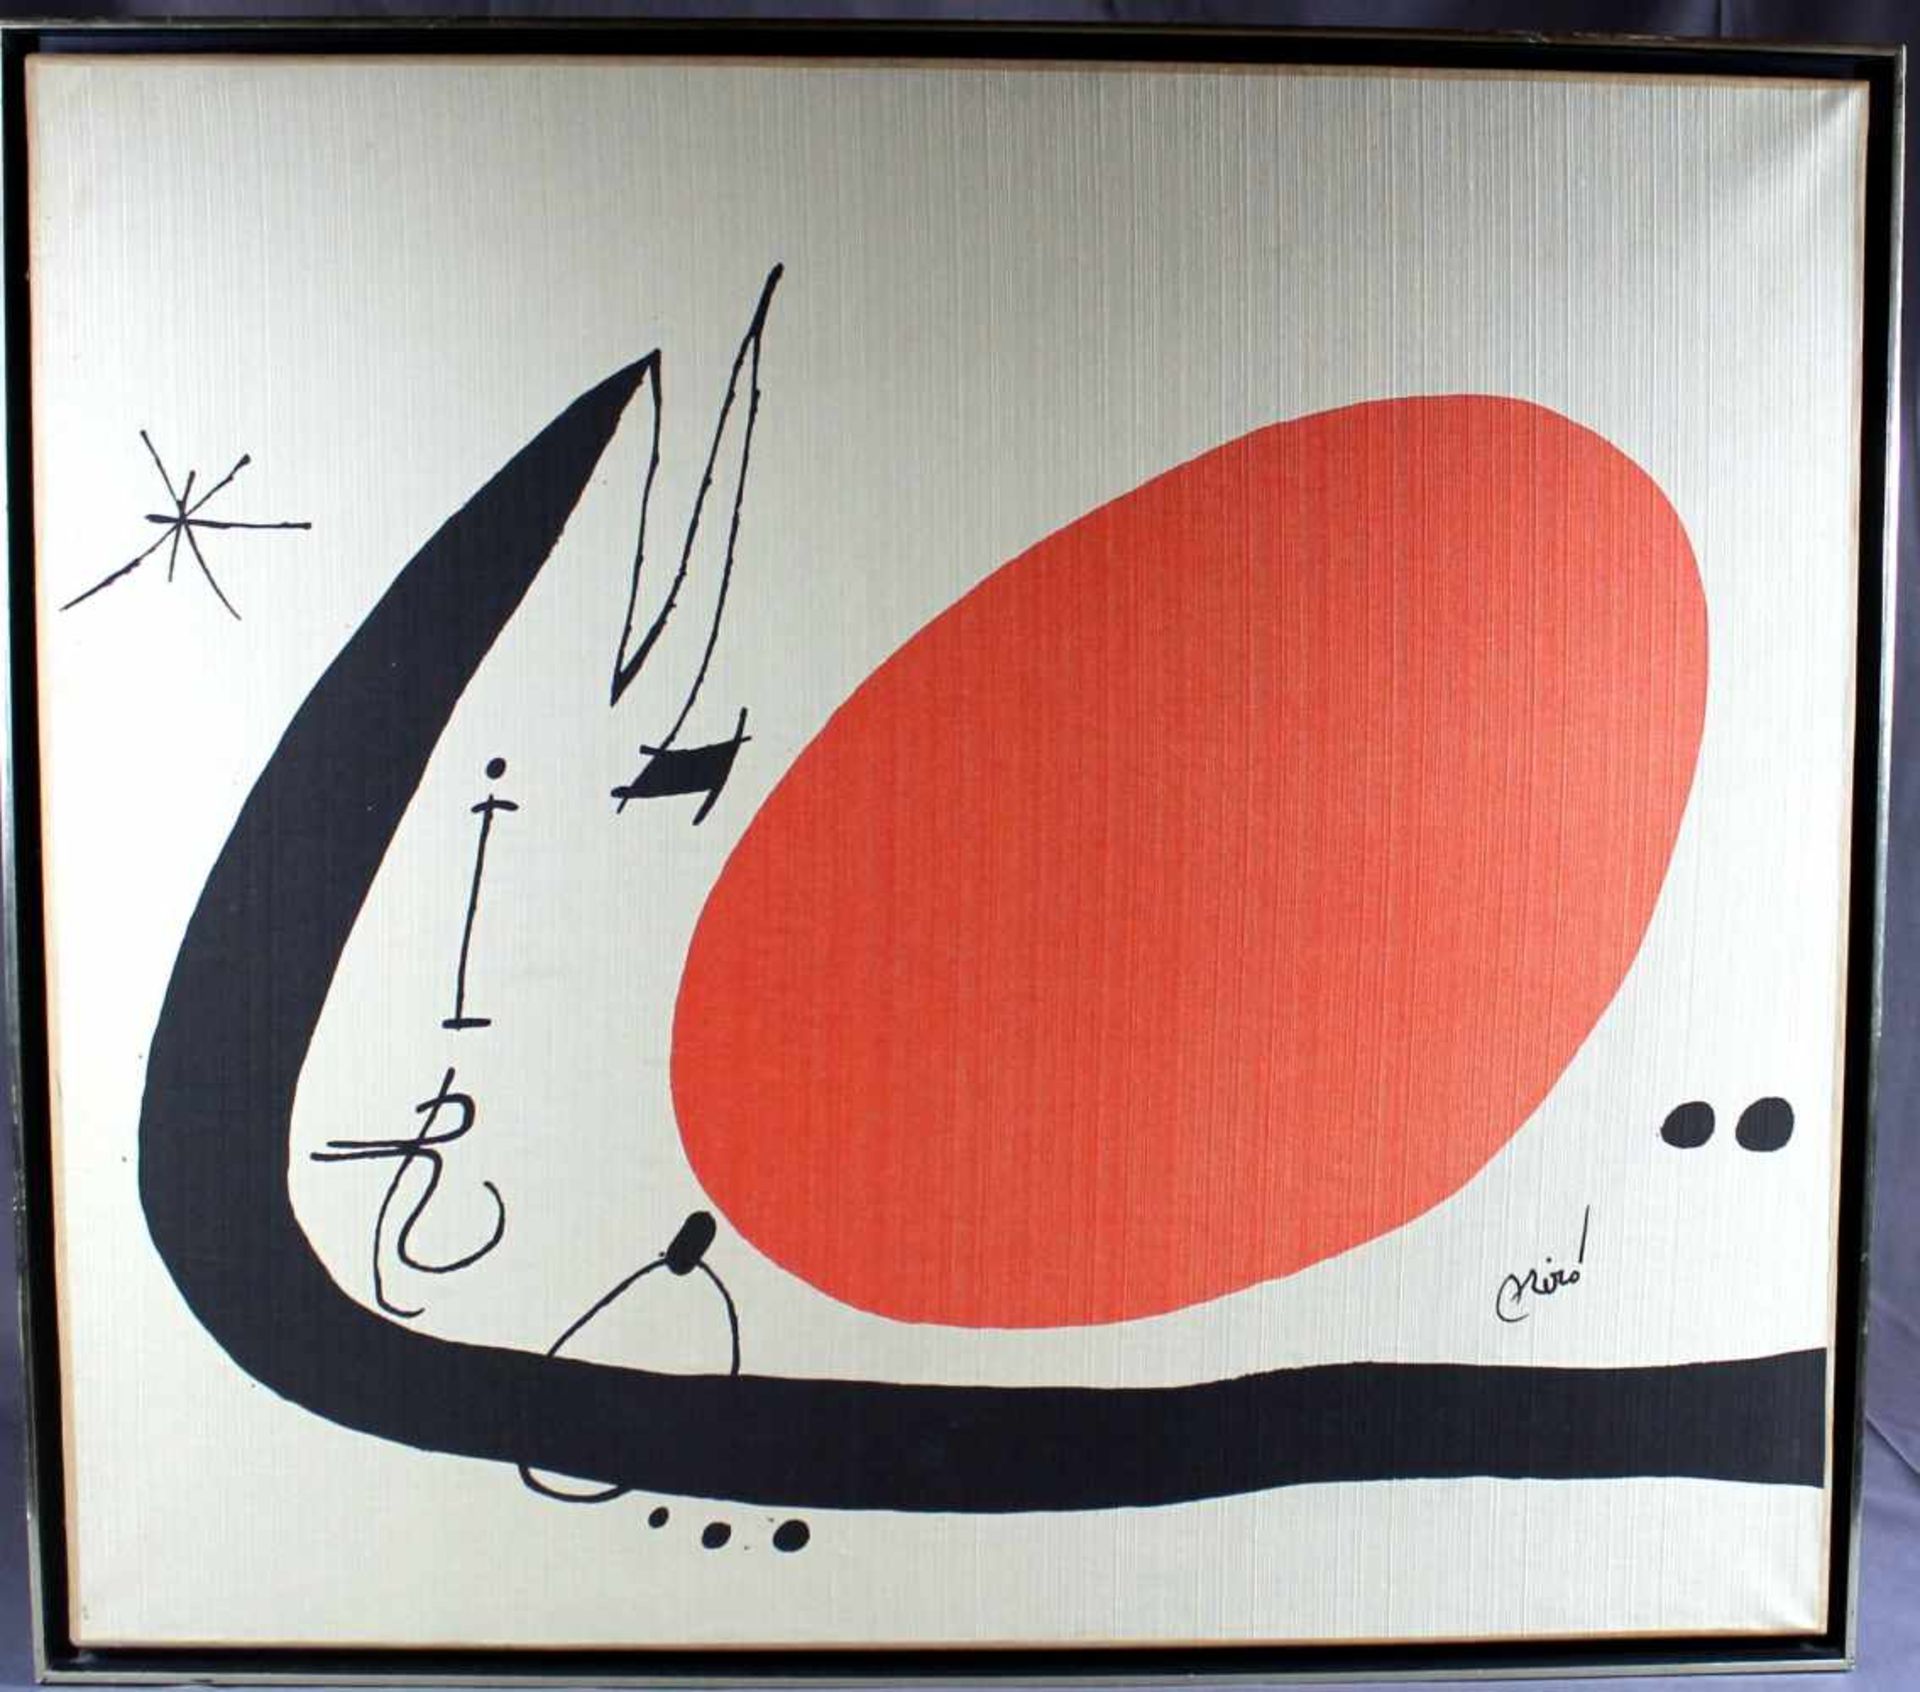 1 Kunstdruck von Miró, gerahmt, ca. 68cm x 75,5cm (Motivgrösse)